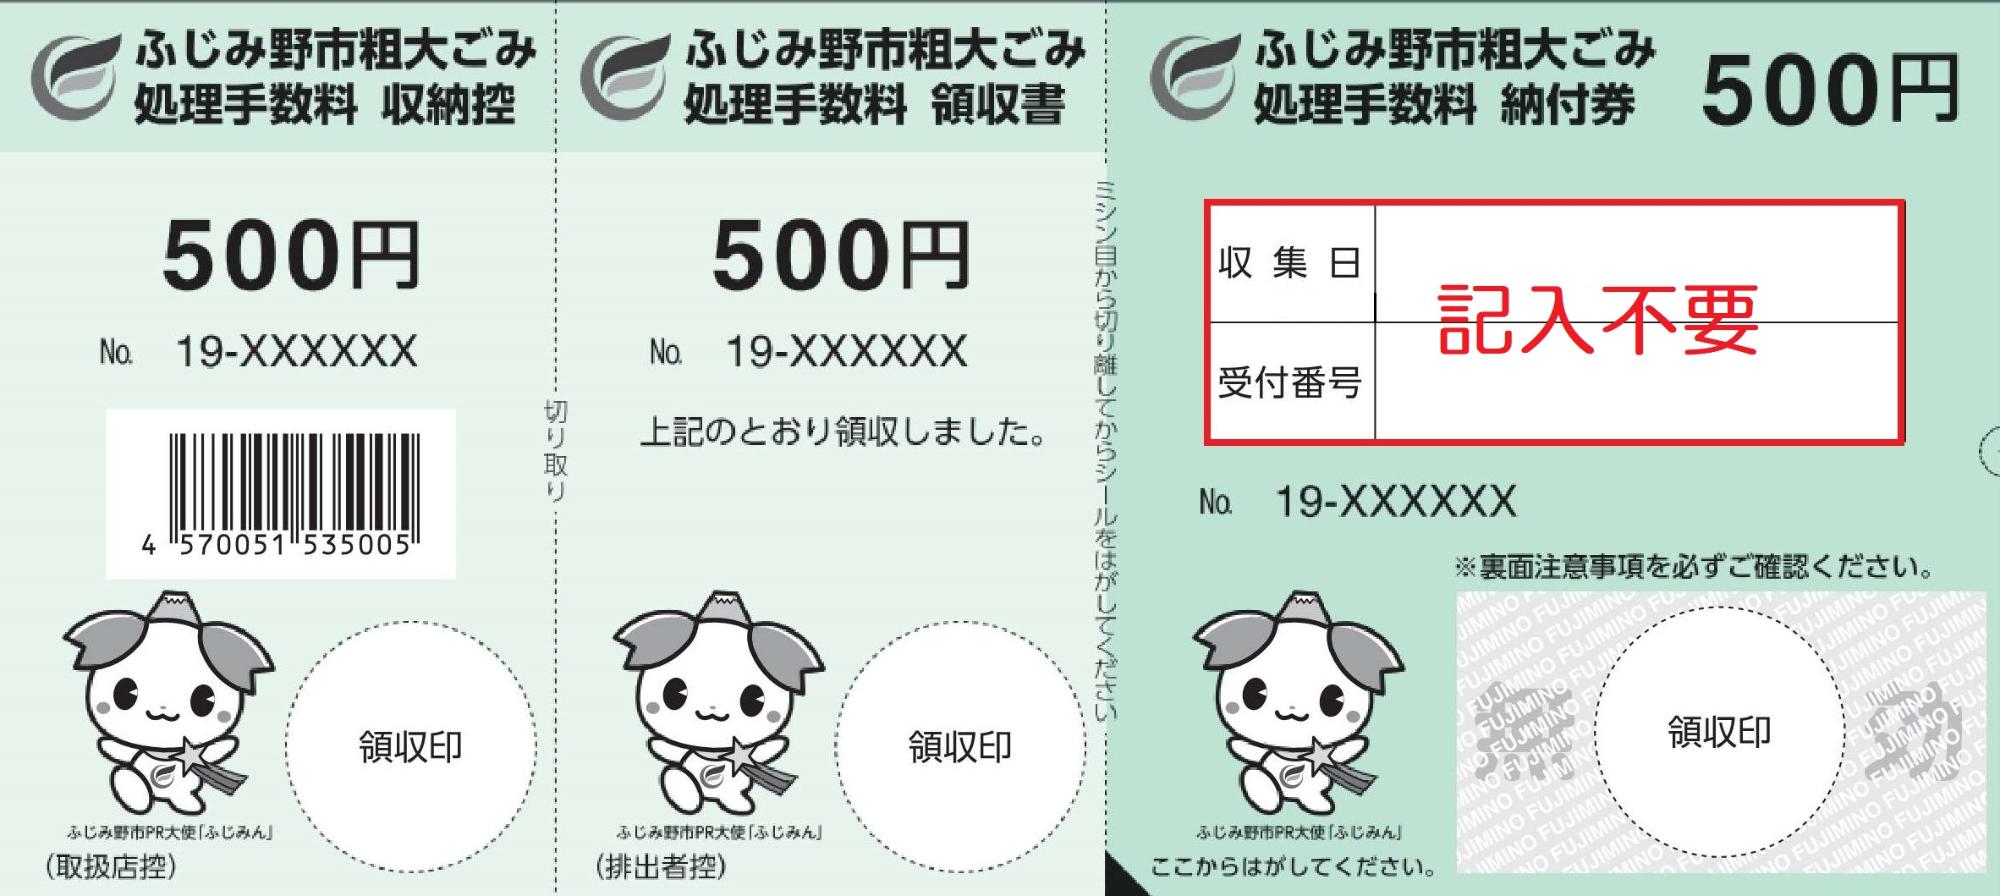 収集日と受付番号の欄に記入不要と書かれた500円券の図